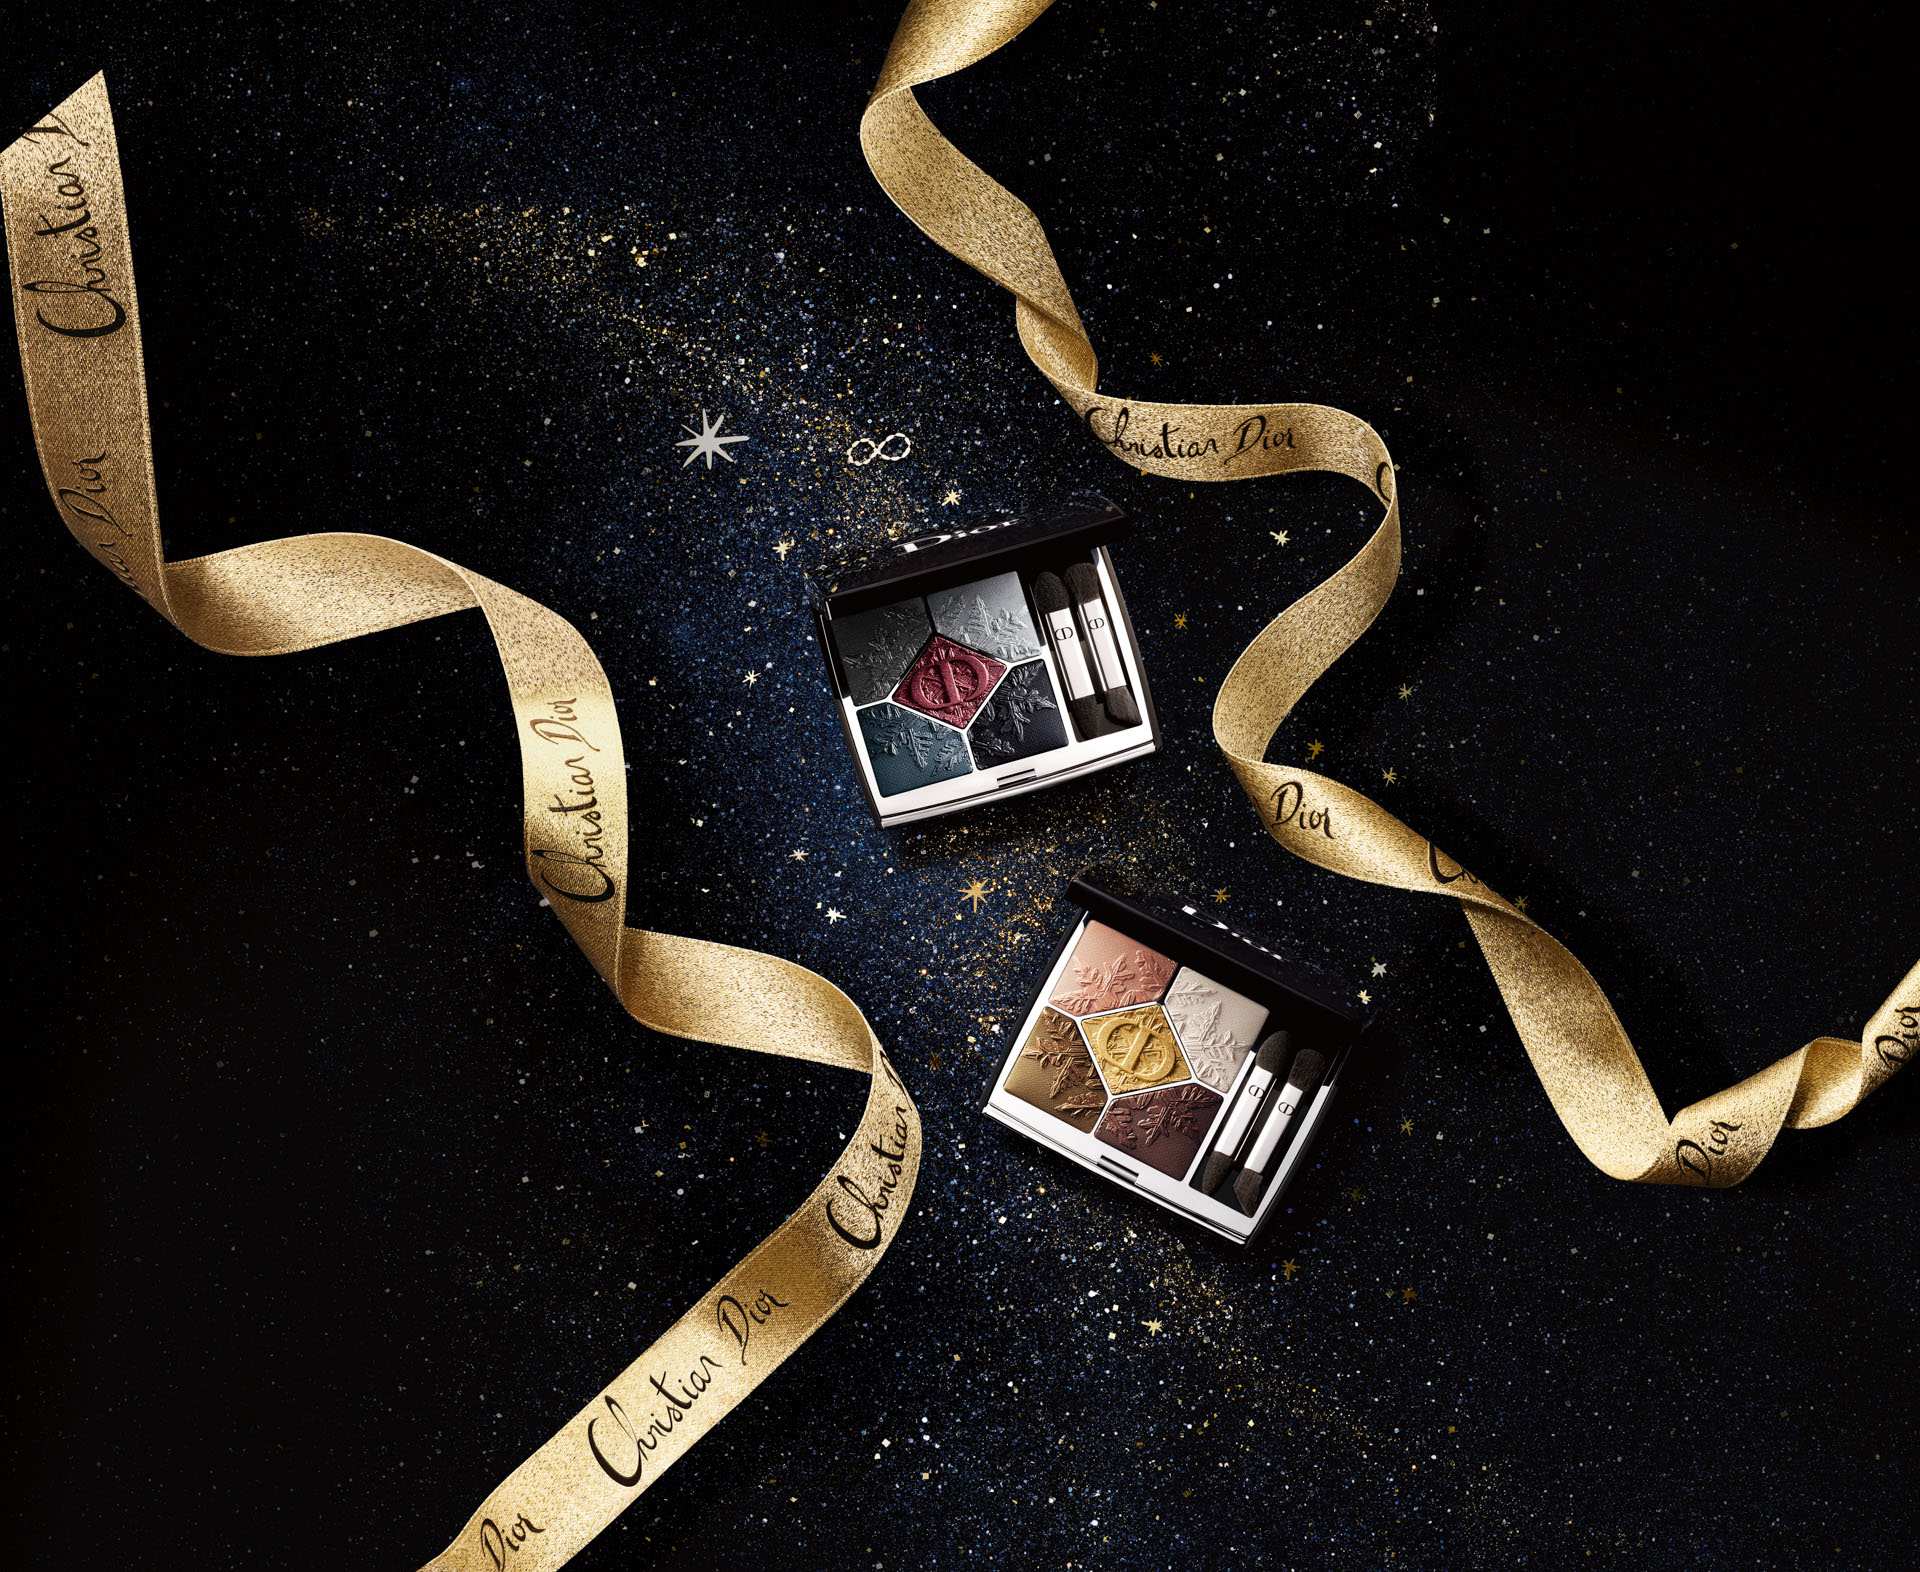 實體美炸！Dior2020聖誕限定「奶茶皮革氣墊蜜粉」台灣將開賣，細緻光澤超心機 | Dior、2020聖誕、氣墊 | 美人計 | 妞新聞